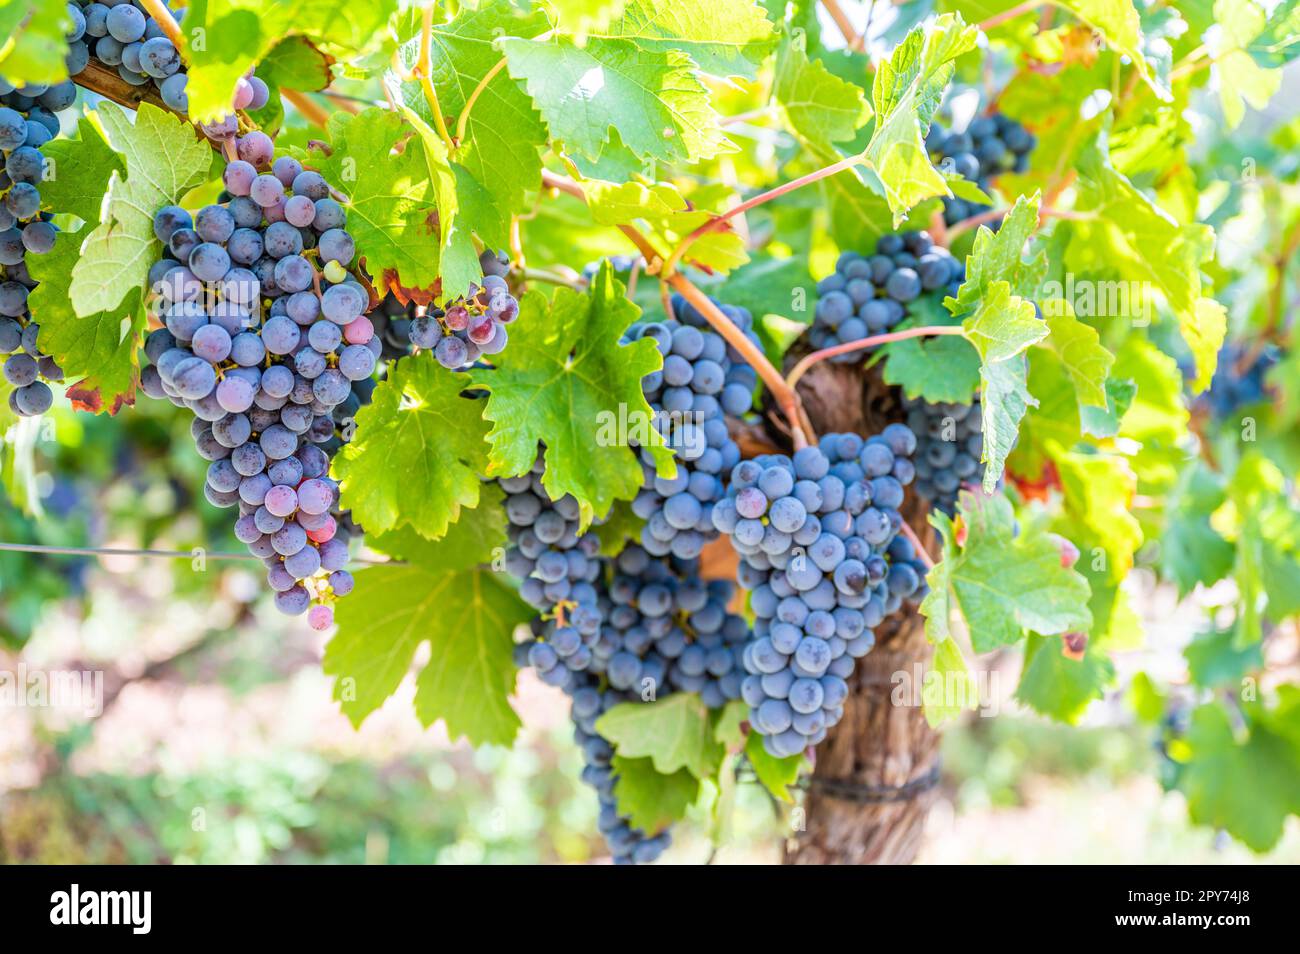 Primo piano le uve da vino blu appendono ad una pianta di vite in una regione vinicola durante l'autunno, foglie verdi intorno alle uve Foto Stock